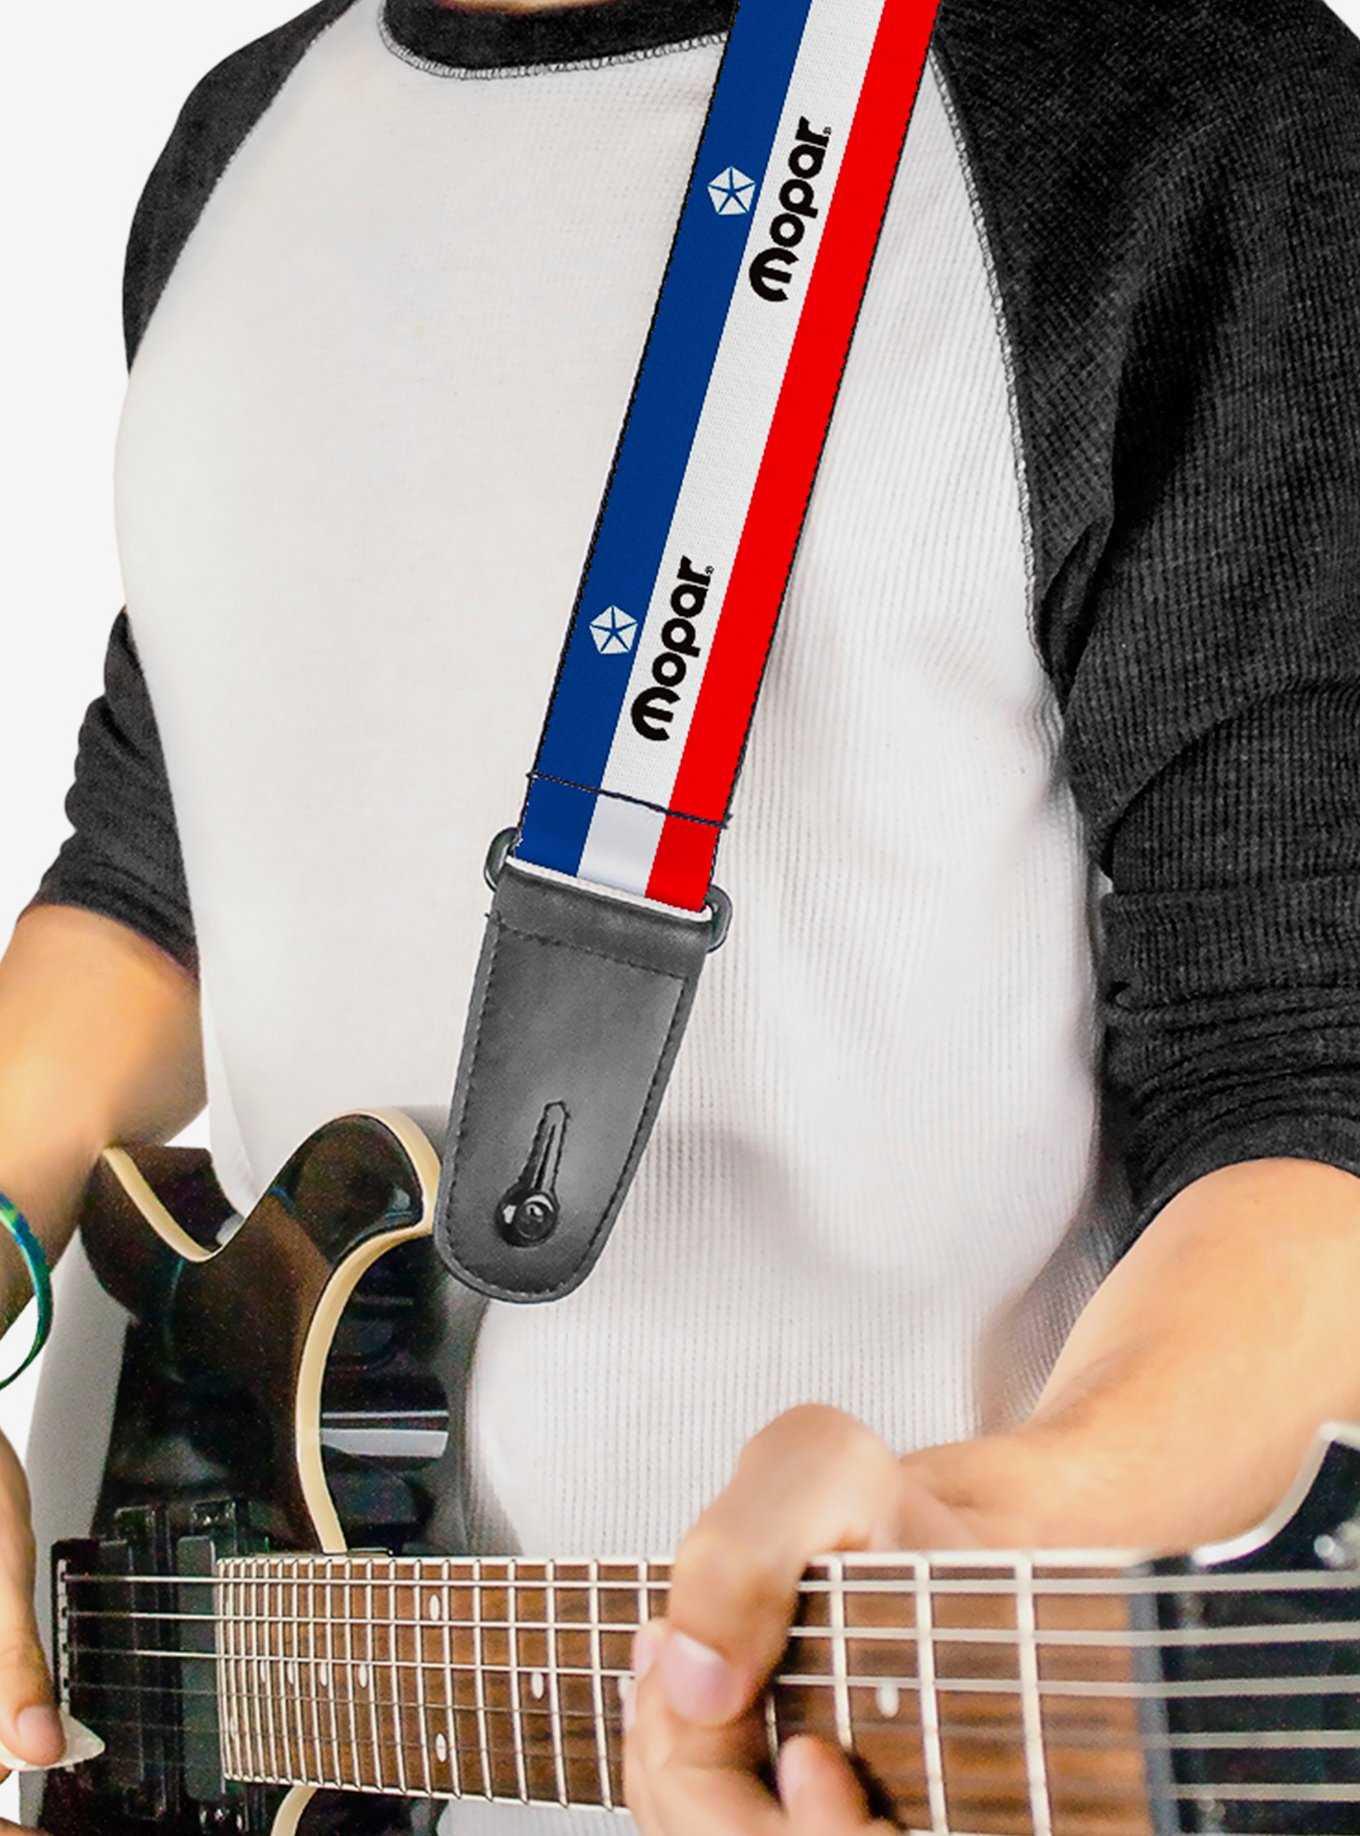 Mopar Logo Stripe Guitar Strap, , hi-res